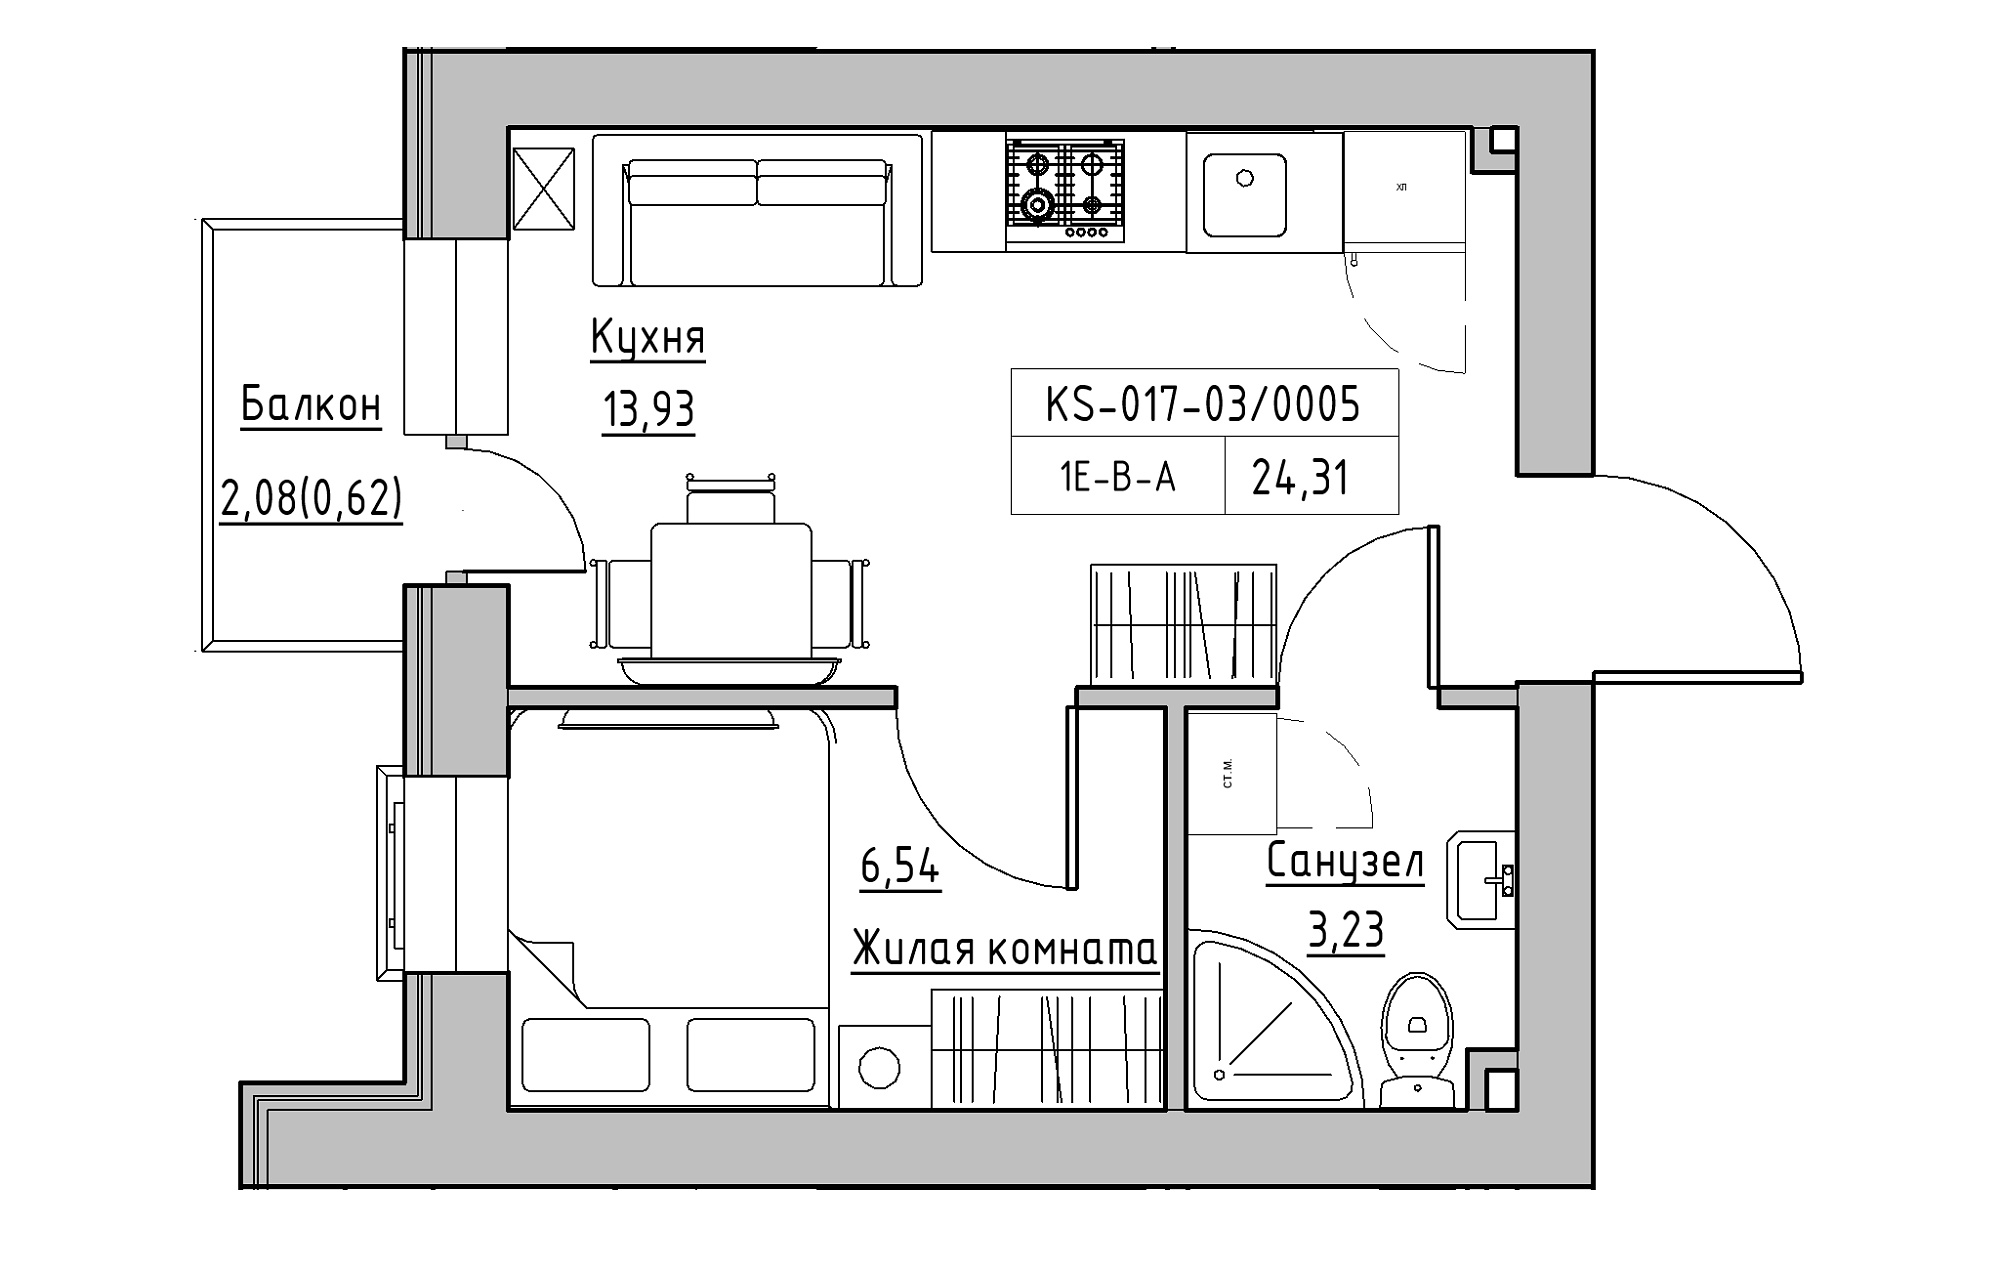 Планировка 1-к квартира площей 24.31м2, KS-017-03/0005.